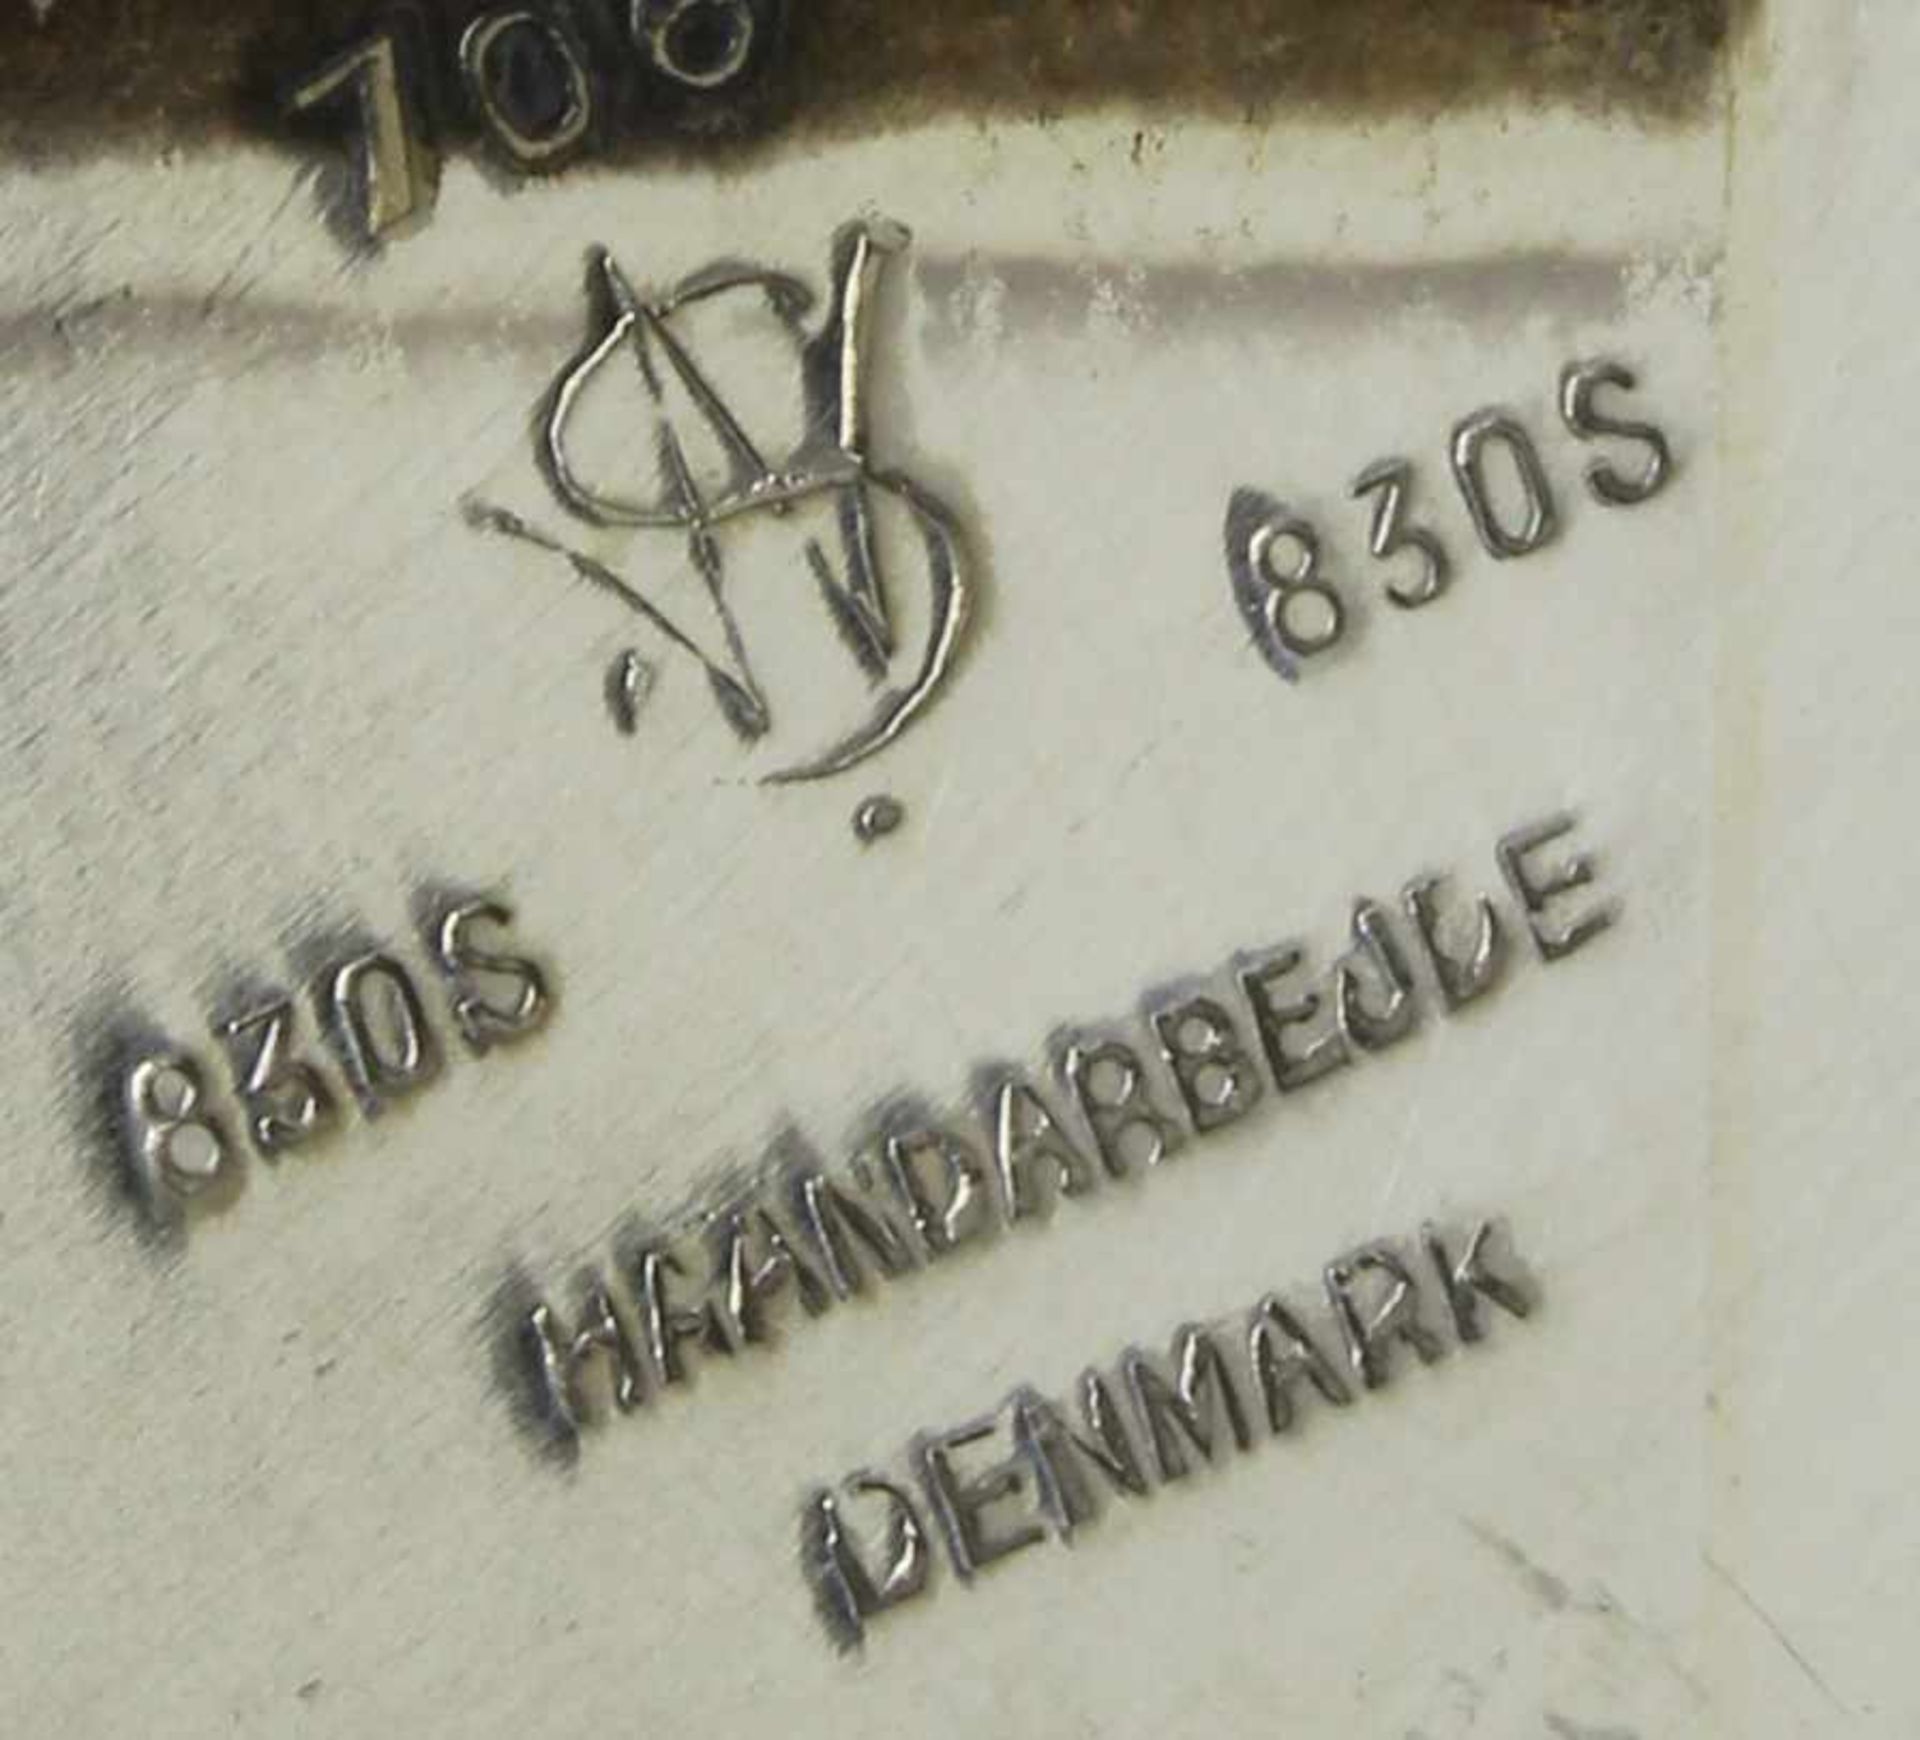 Schenkkanne, Silber 830, Dänemark, bauchig, brauner Holzhenkel, 16 cm hoch, ca. 440 g< - Bild 2 aus 2